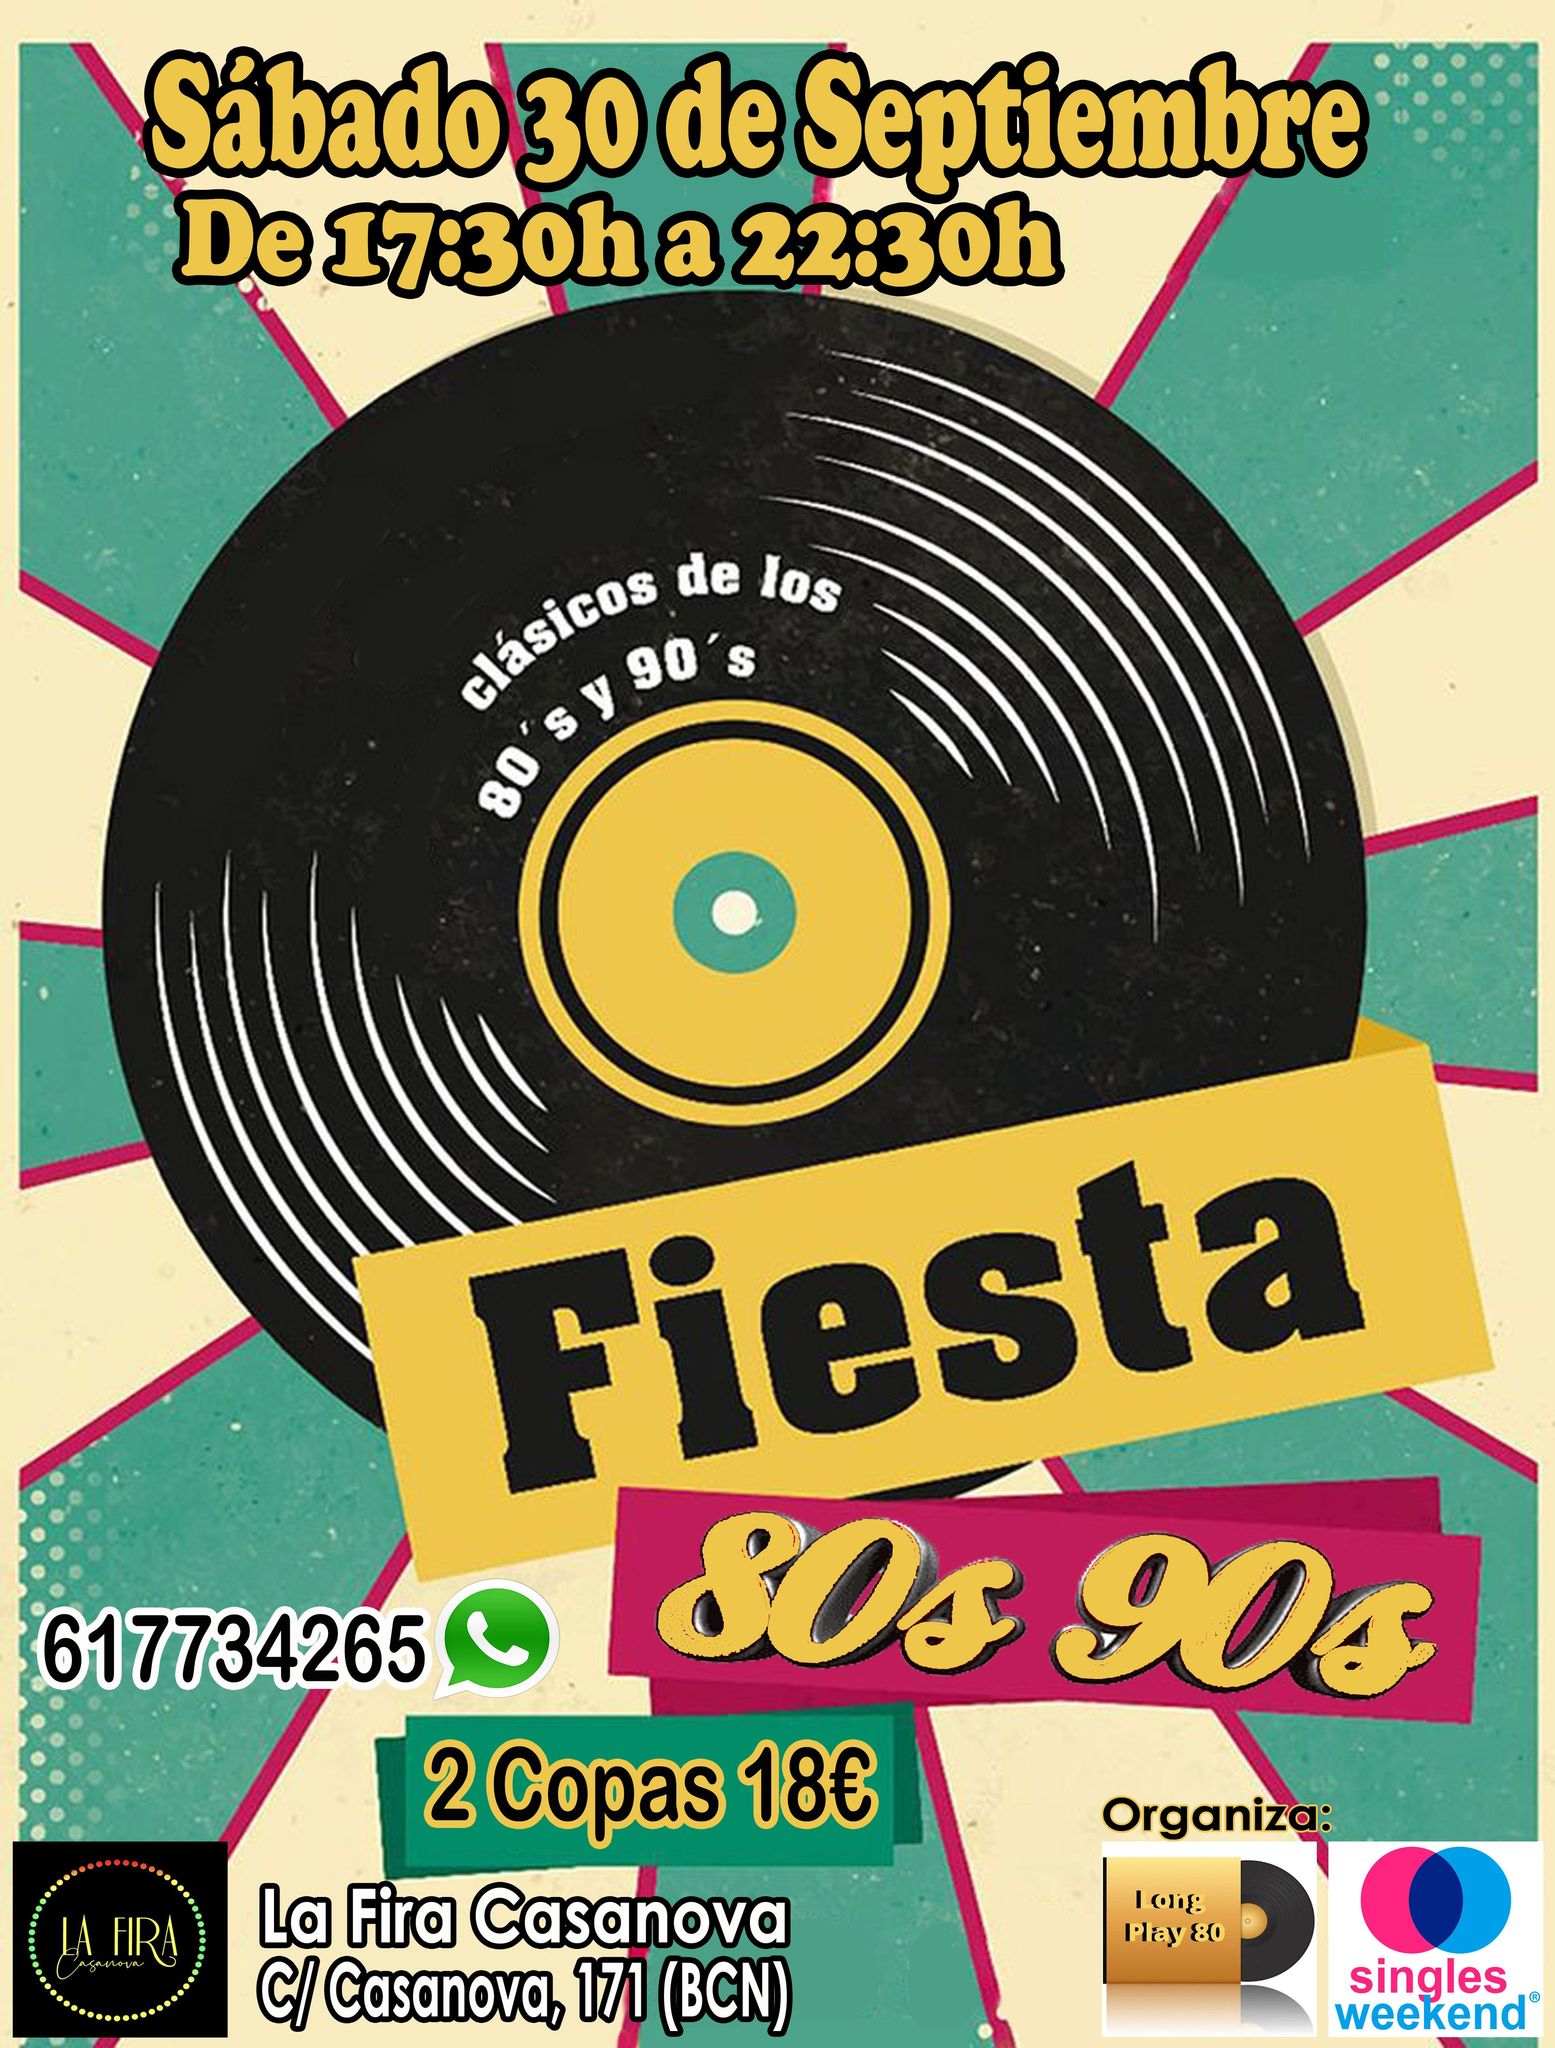 Flyer Fiesta 80s 90s en La Fira Casanova